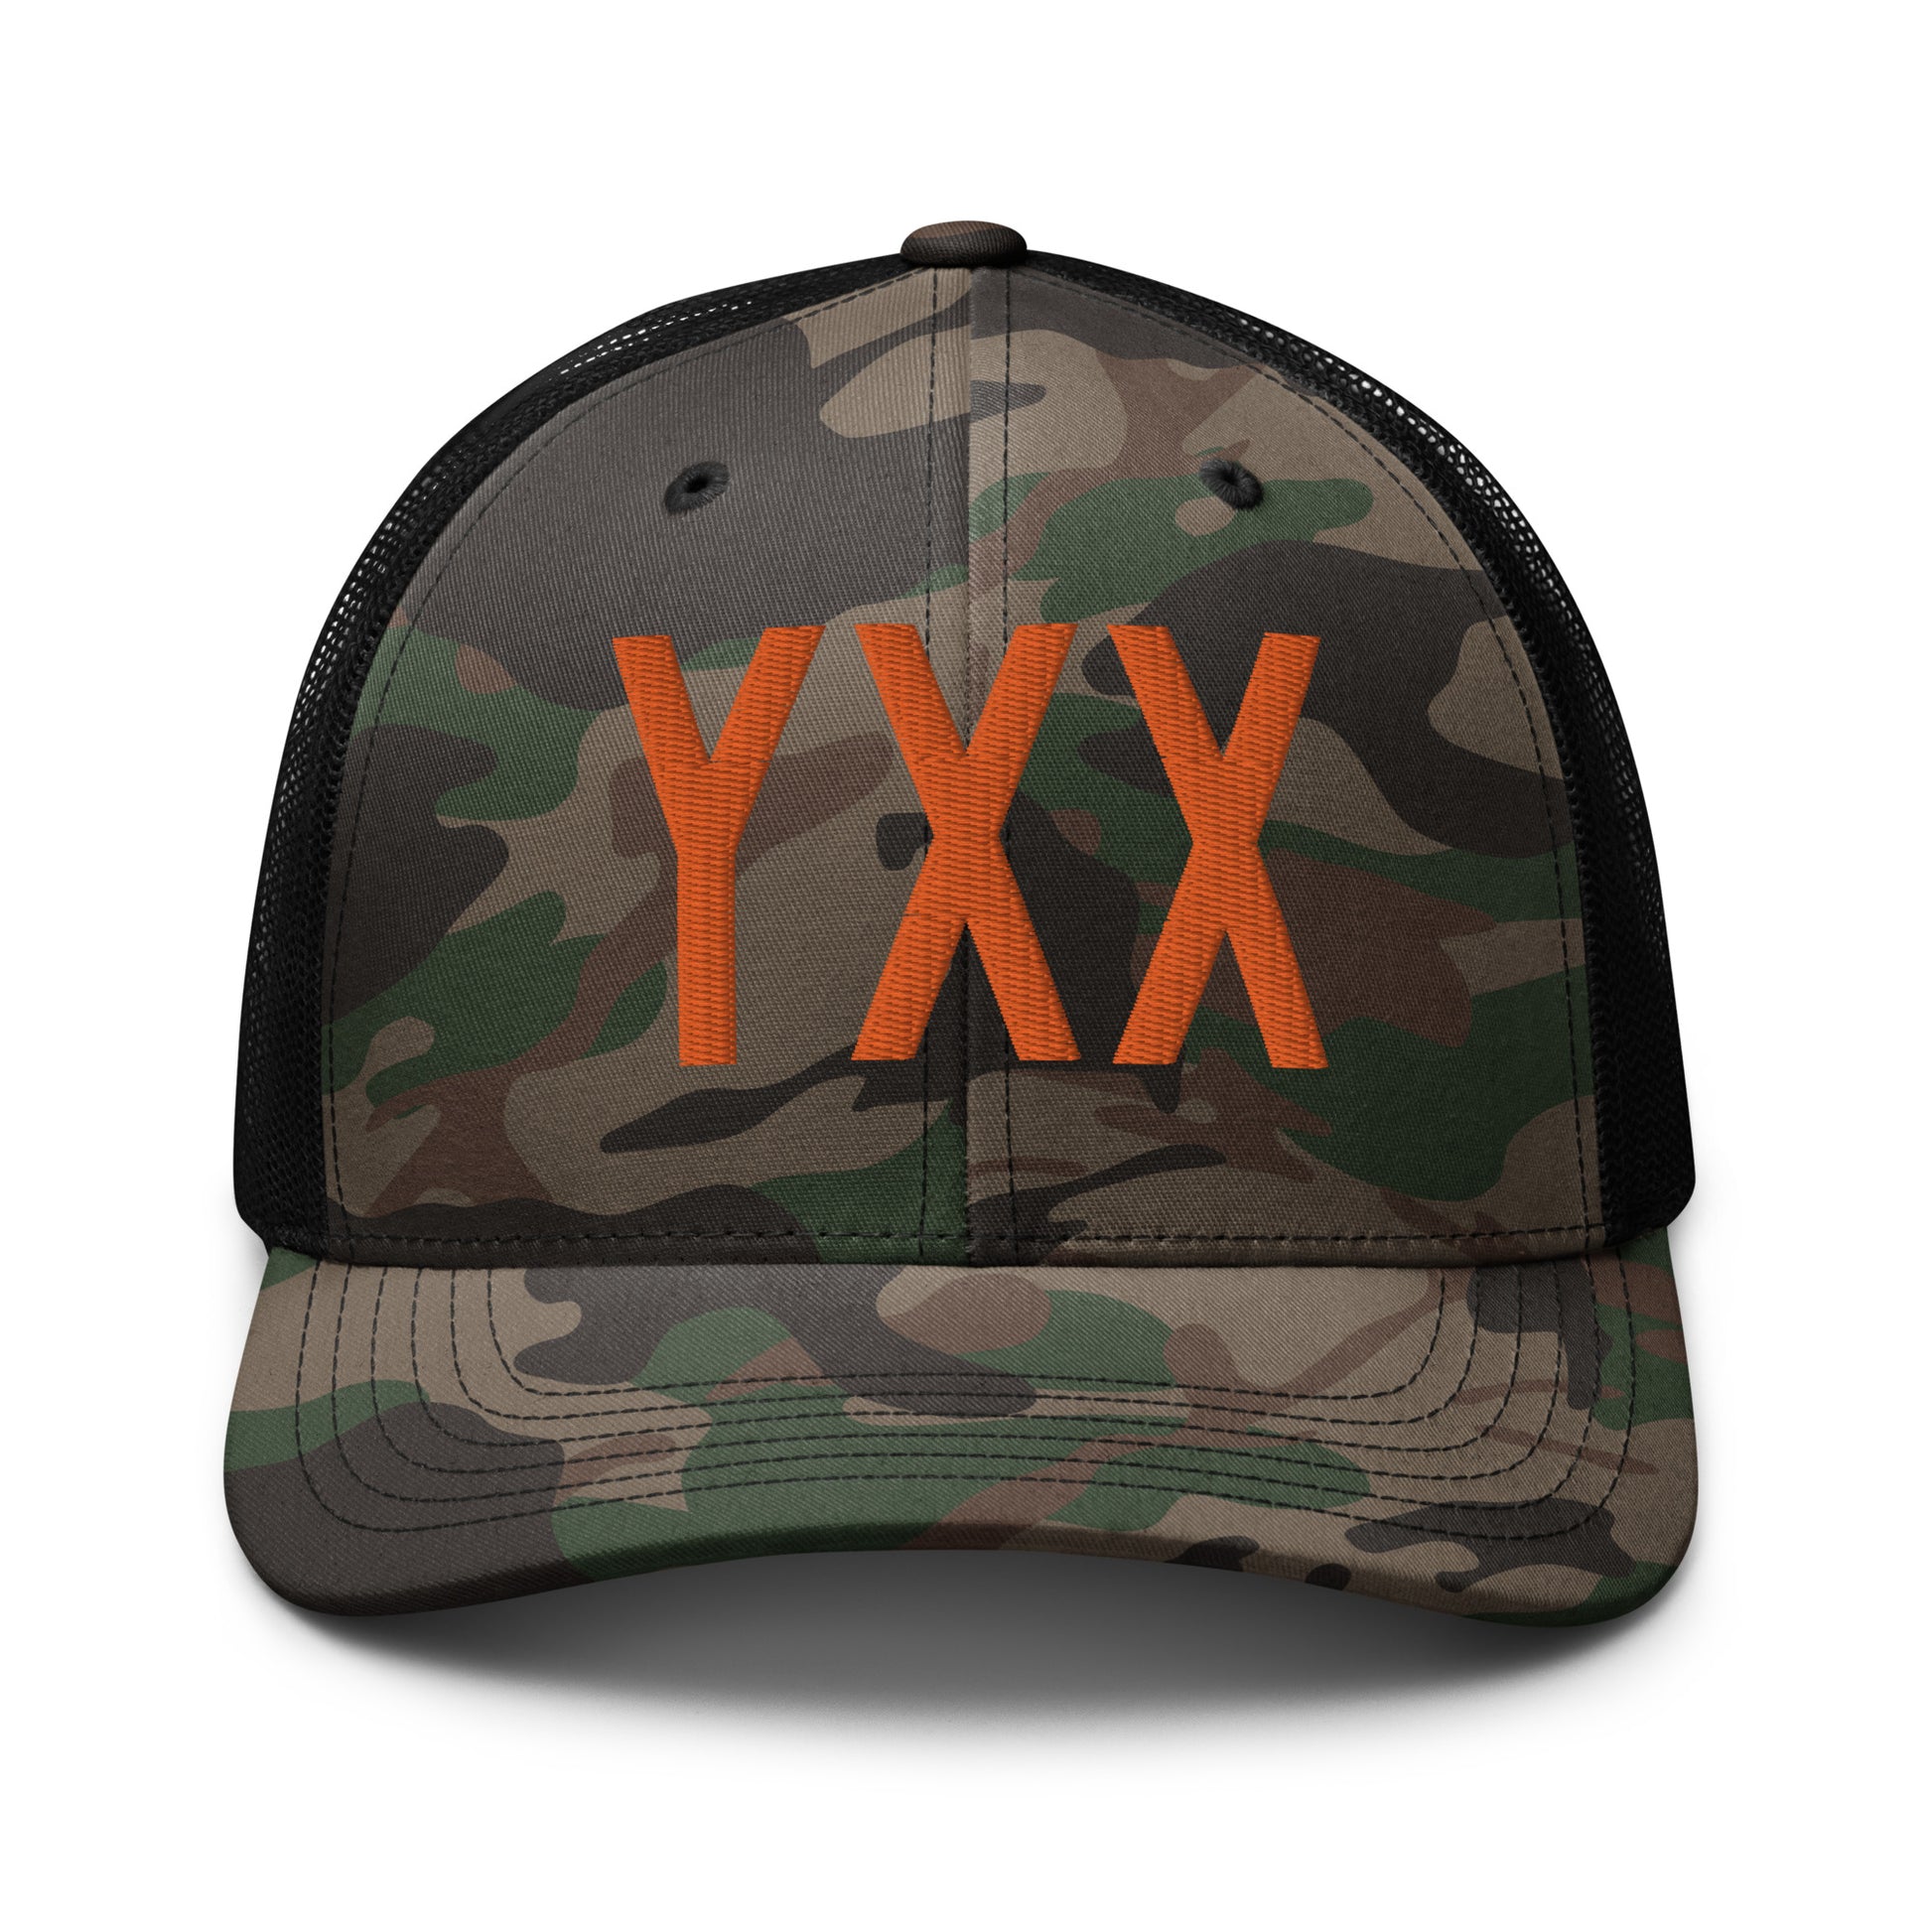 Airport Code Camouflage Trucker Hat - Orange • YXX Abbotsford • YHM Designs - Image 10